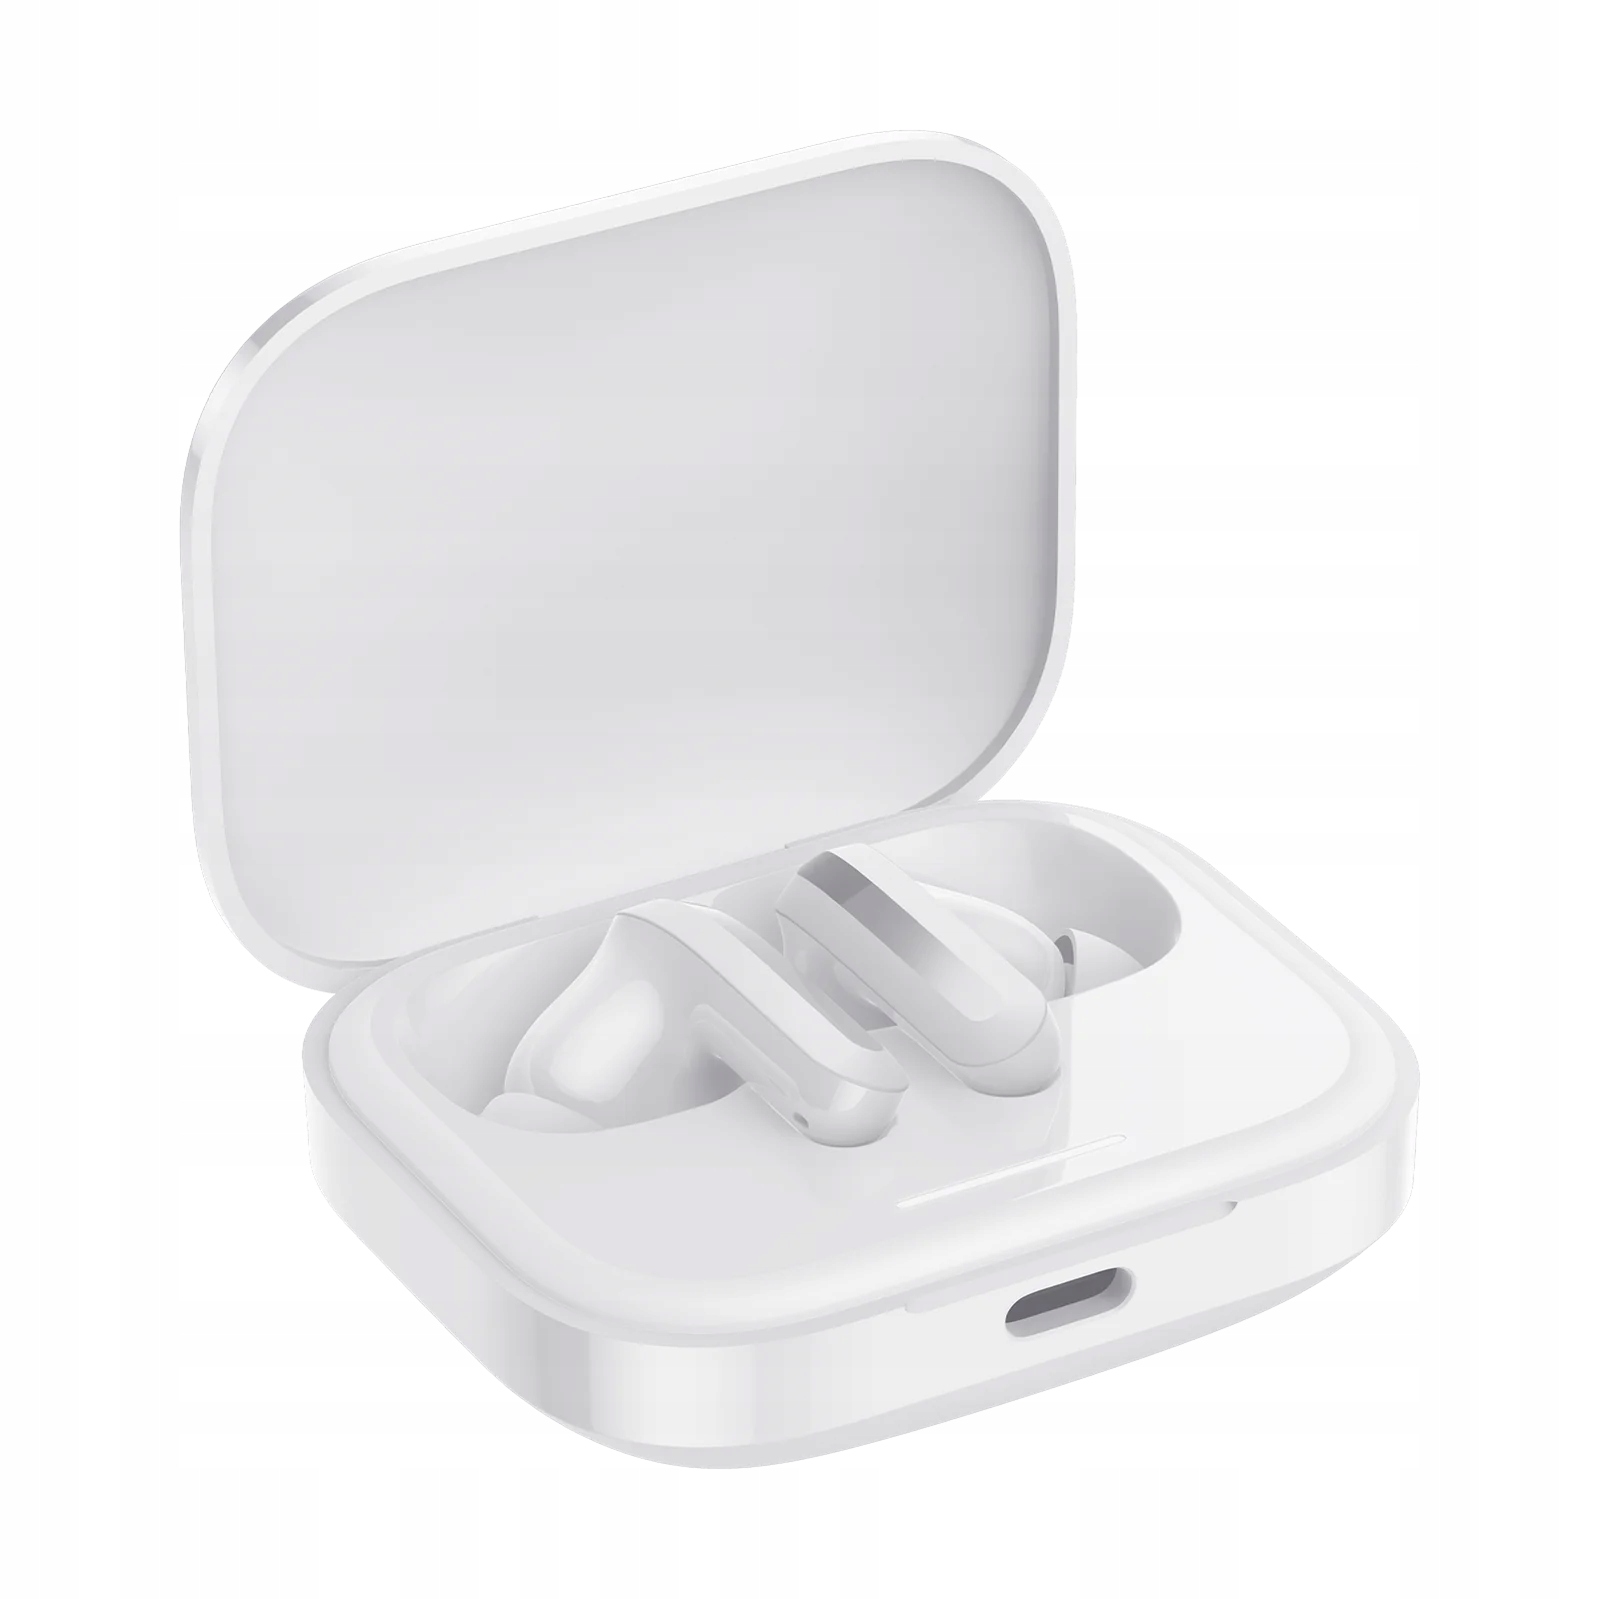 Bezdrátová sluchátka do uší Xiaomi Buds 5 bílá Hsp Hfp A2DP Avrcp